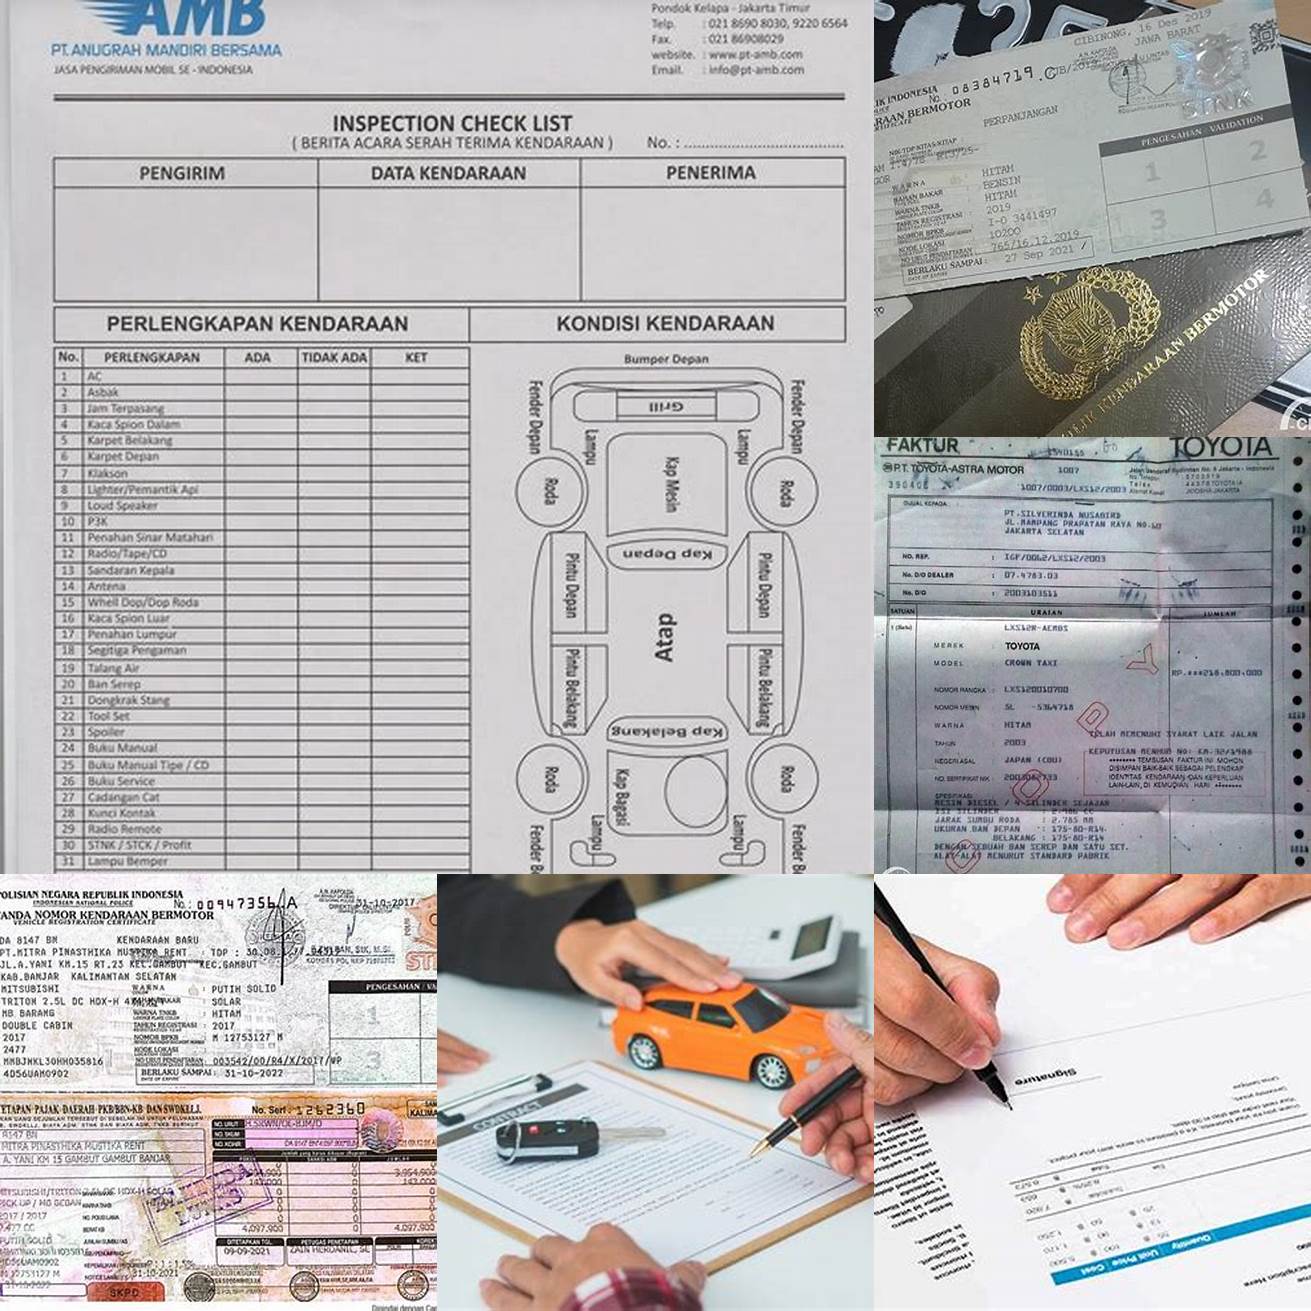 5 Periksa Dokumen MobilPeriksa dokumen mobil Rubicon bekas dan pastikan semua dokumen mobil tersebut lengkap dan sah